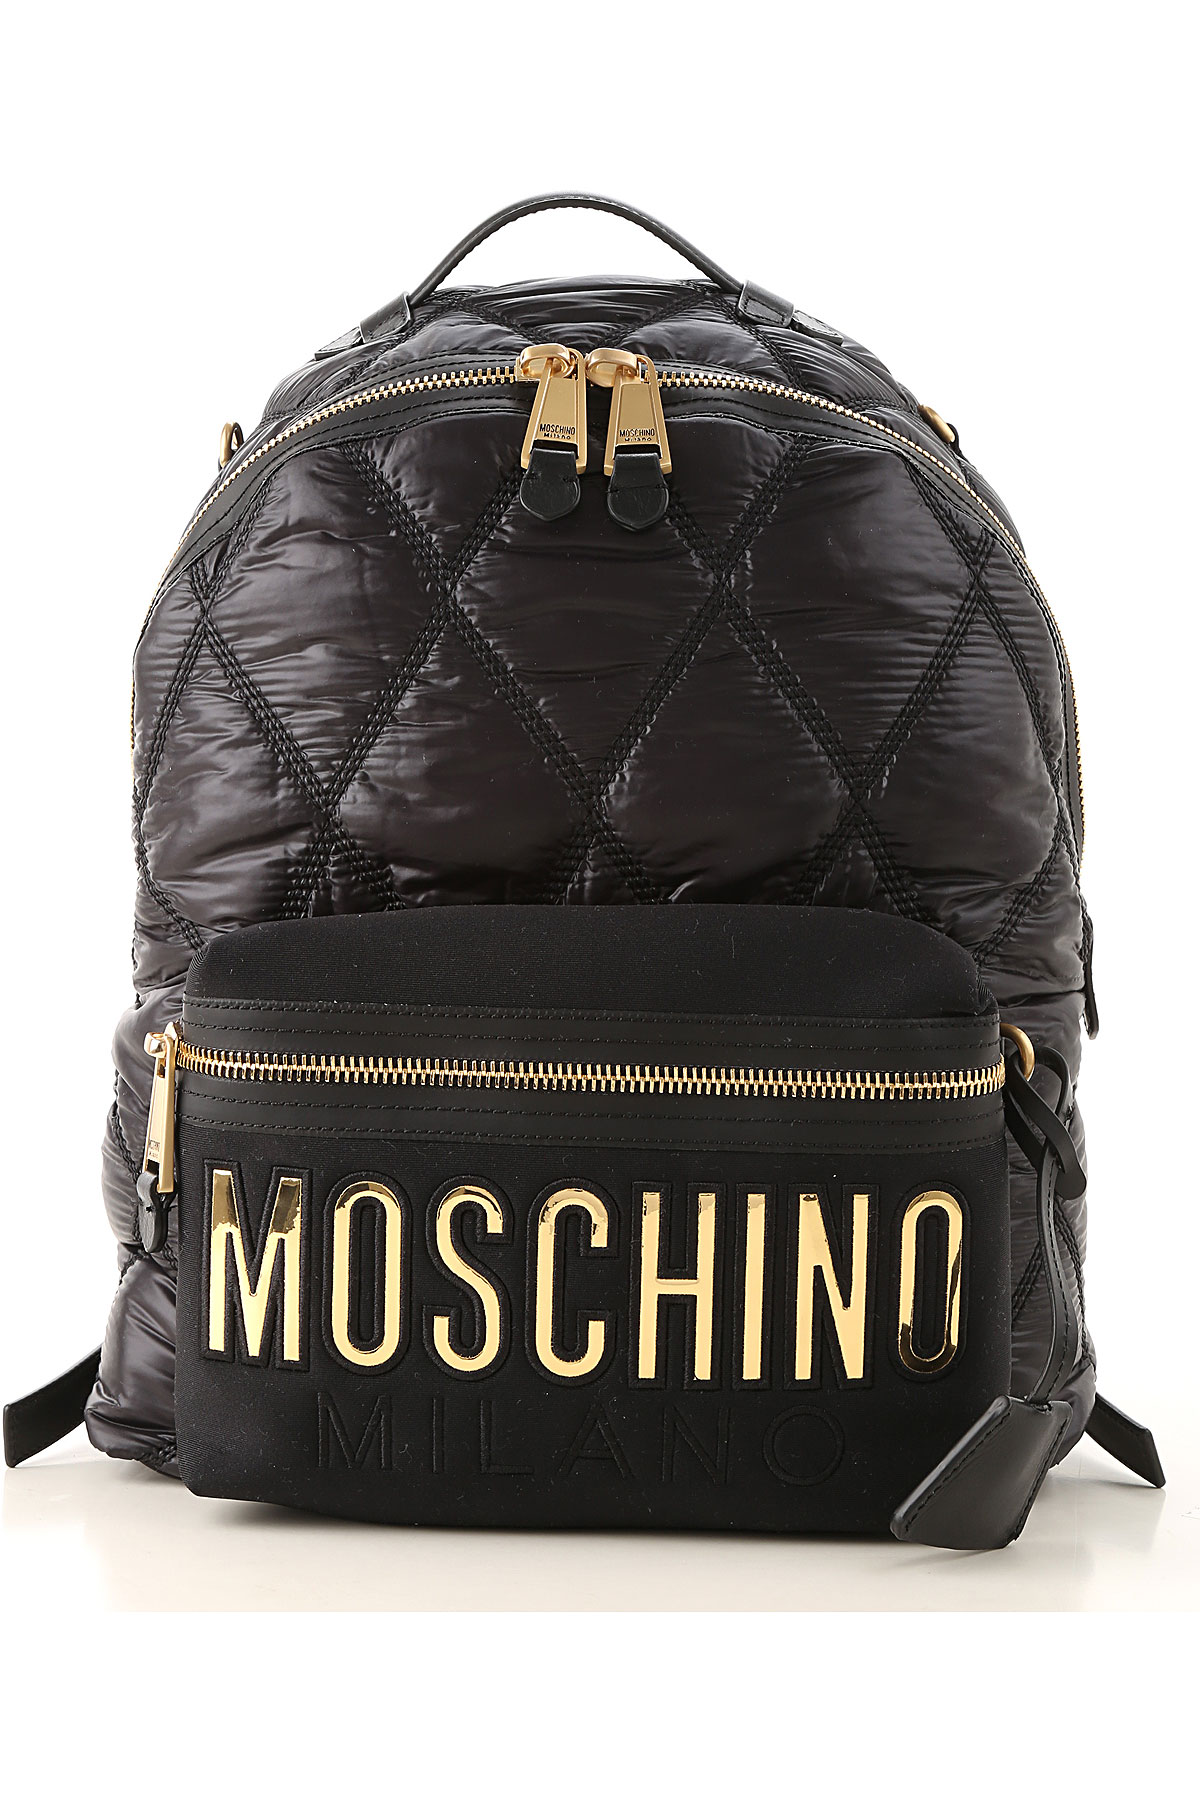 Handbags Moschino, Style code: b7604-8207-1555